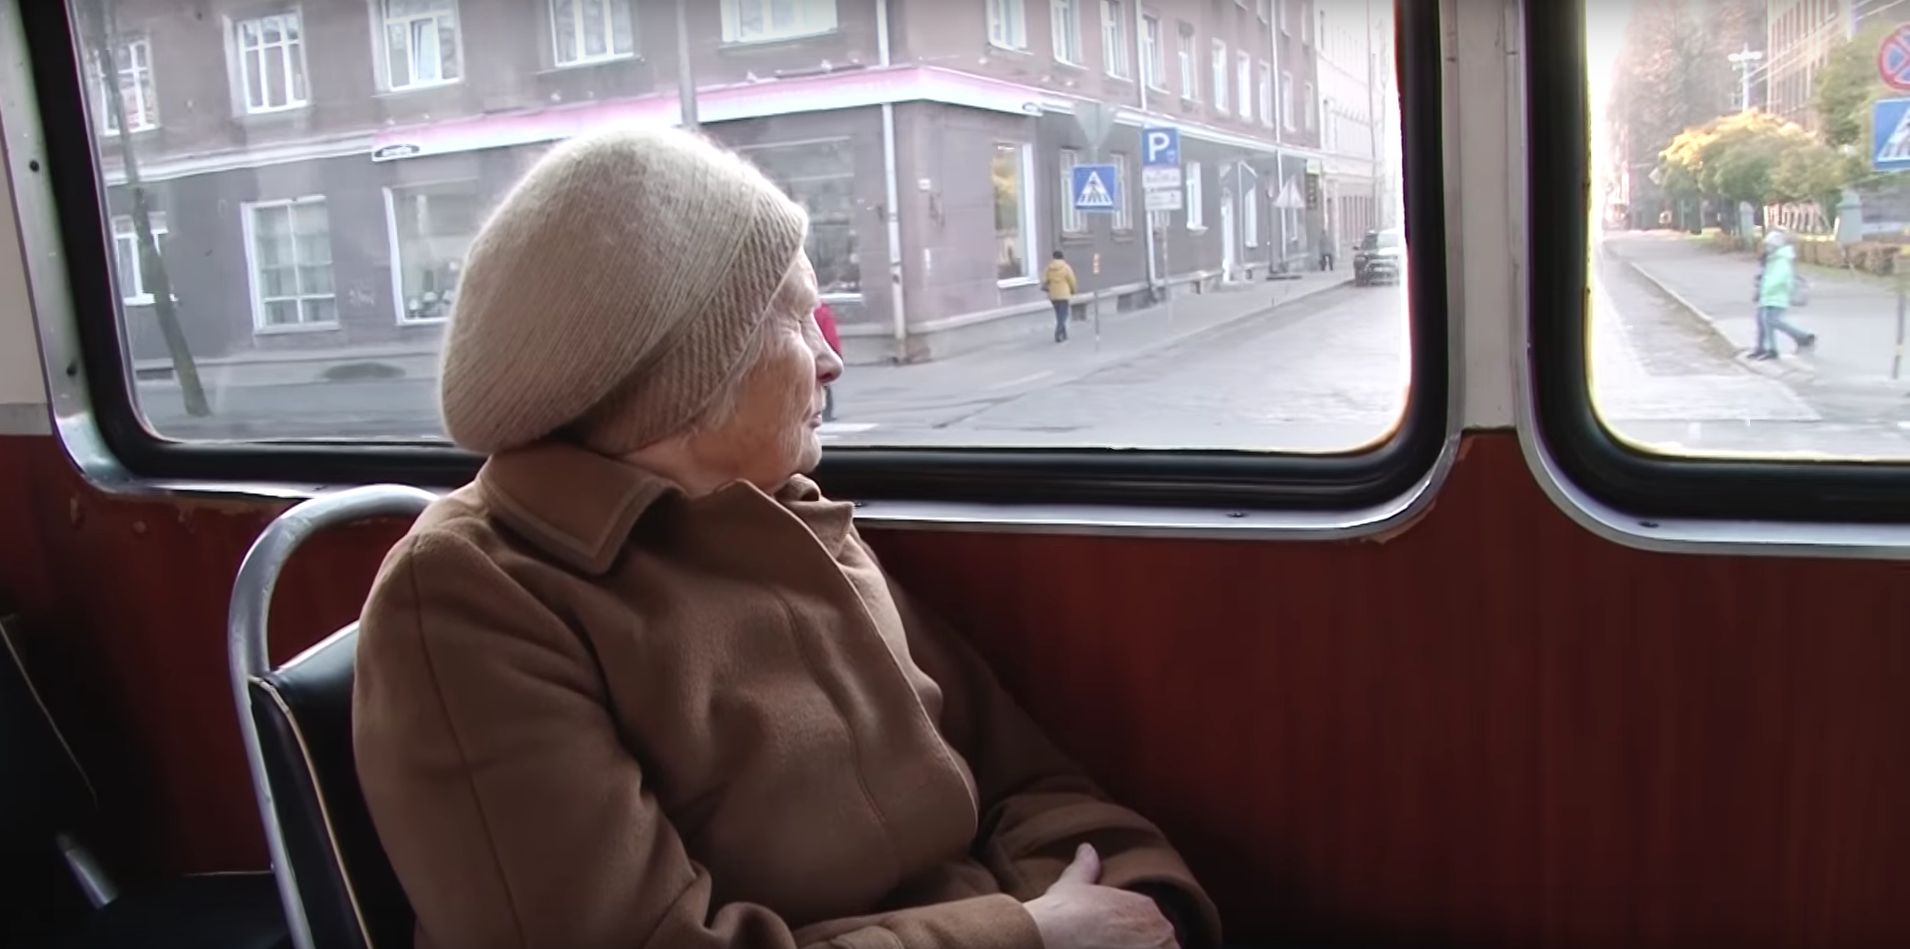 Тетка в автобусе. Бабушка в автобусе. Пожилые люди в автобусе. Пенсионеры в общественном транспорте. Пожилых людей в трамвае.